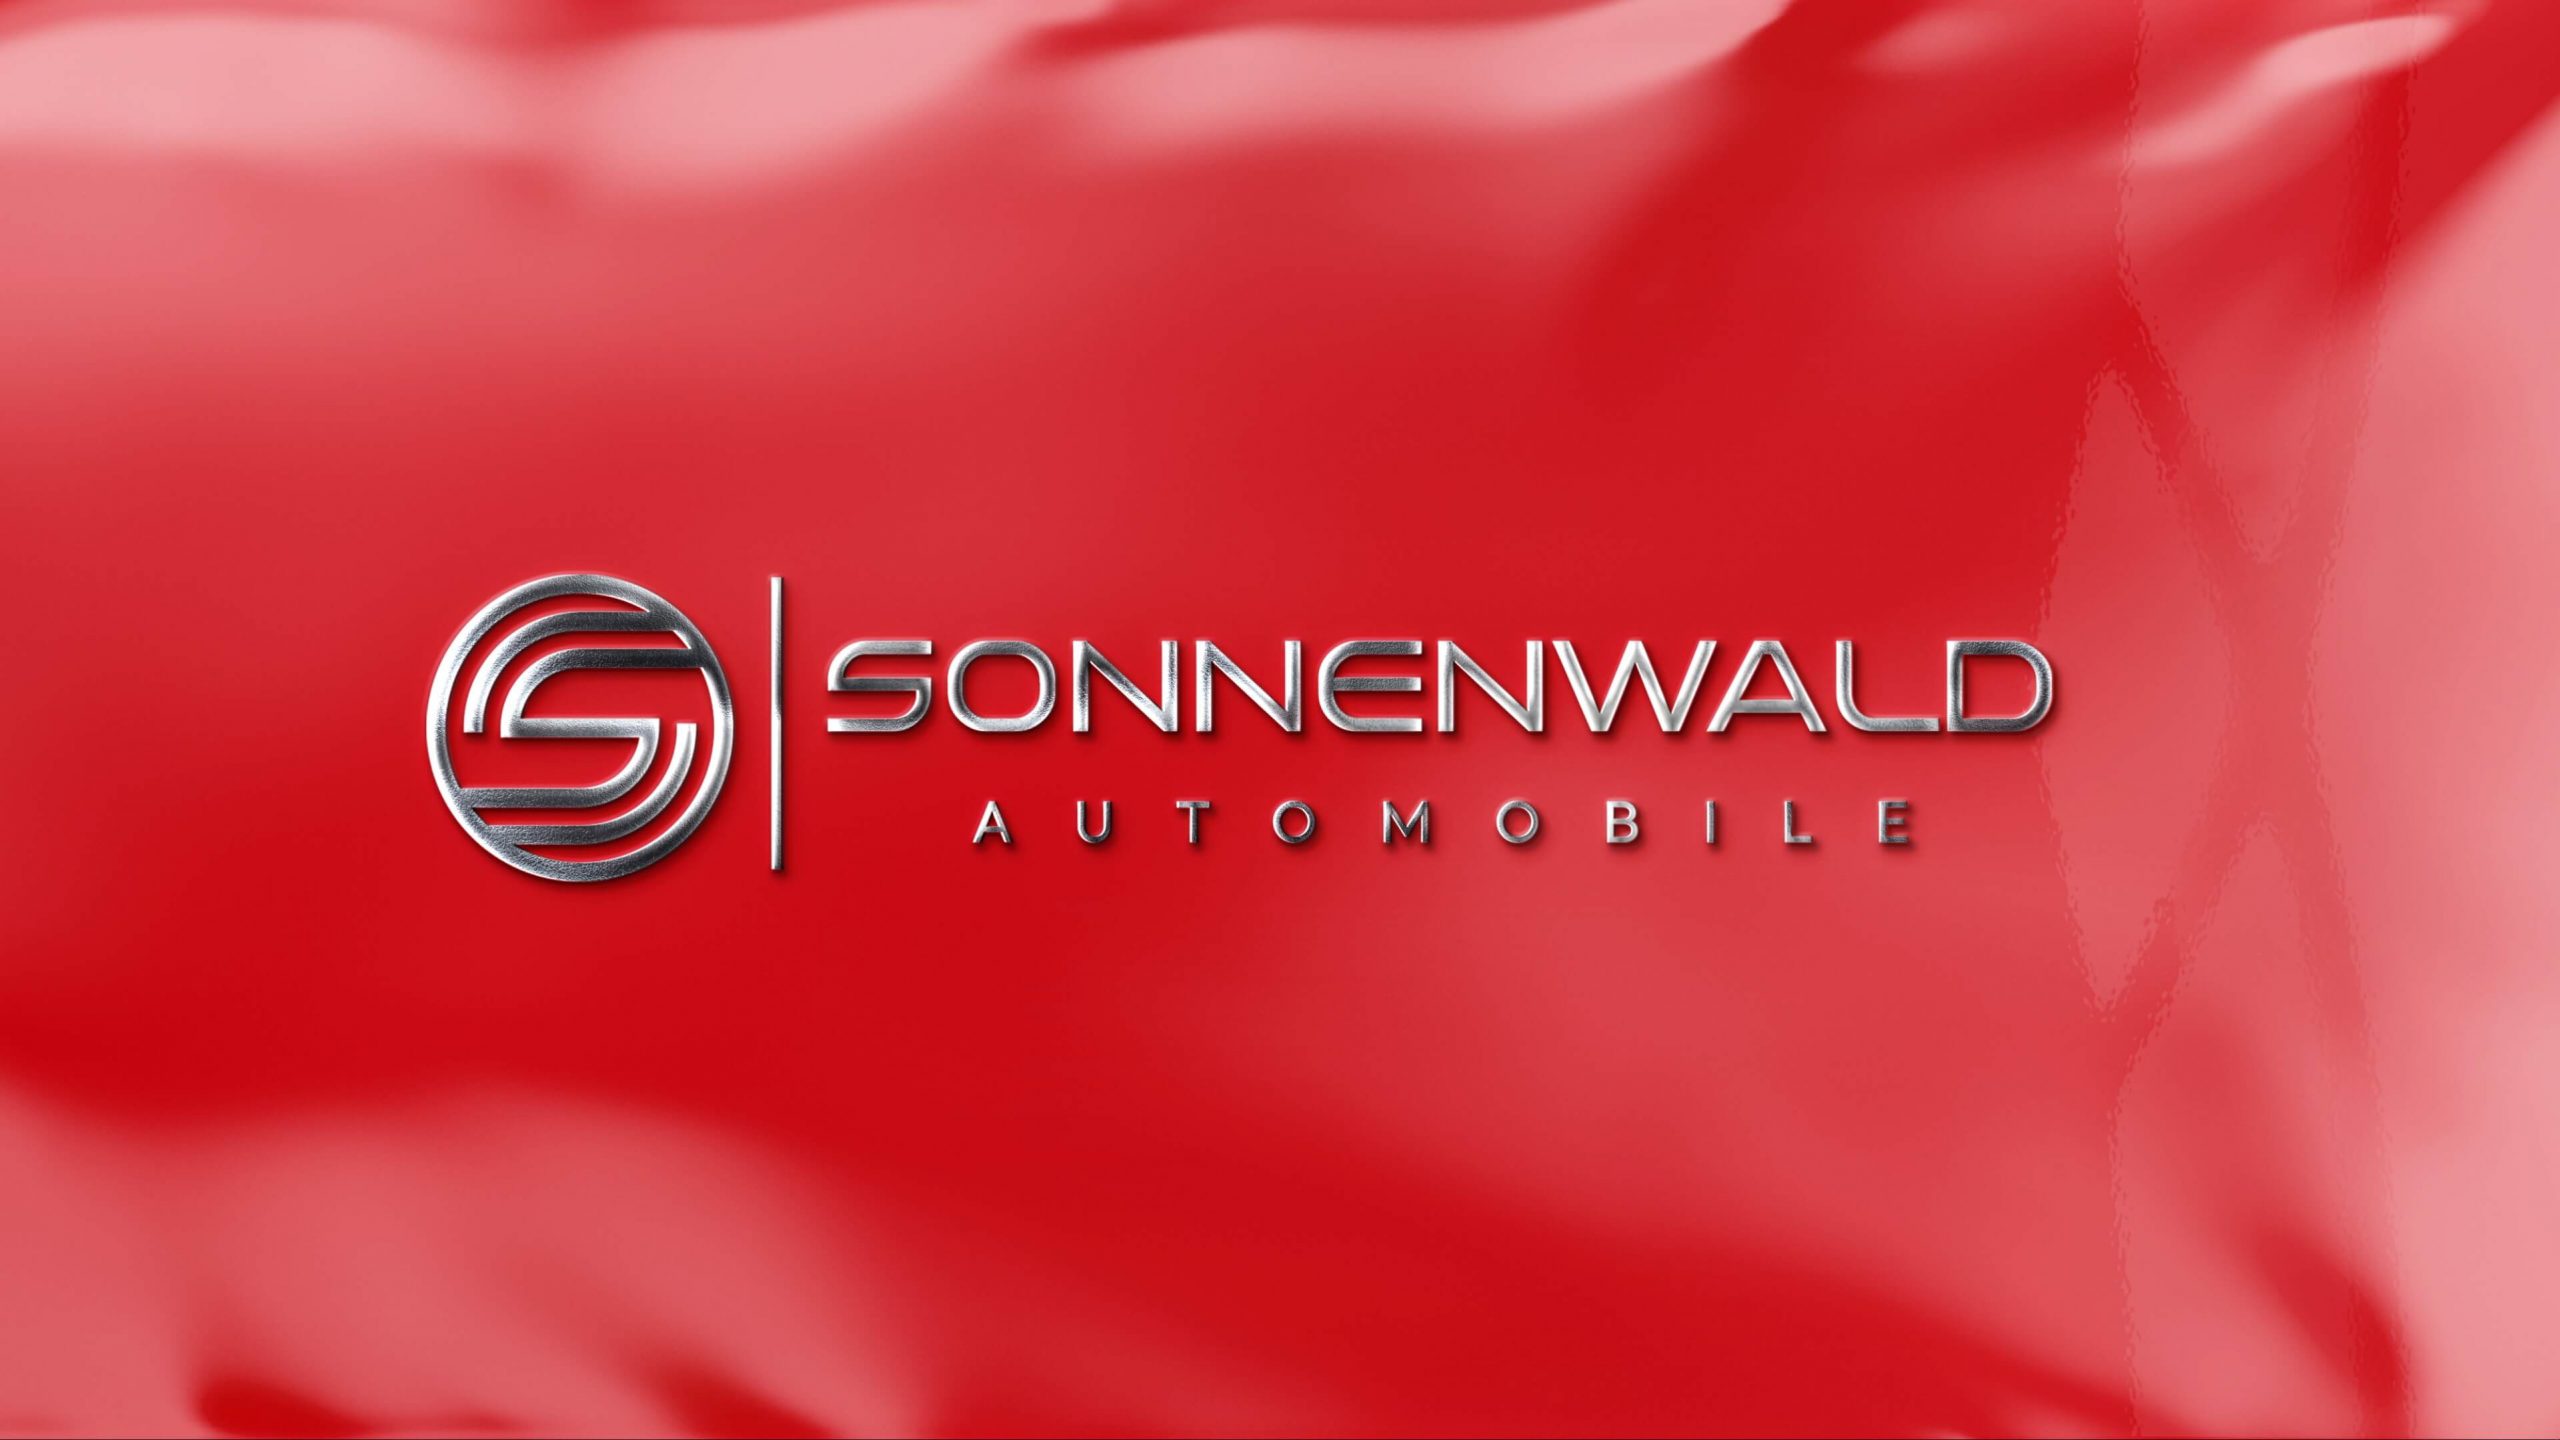 Sonnenwald Automobile